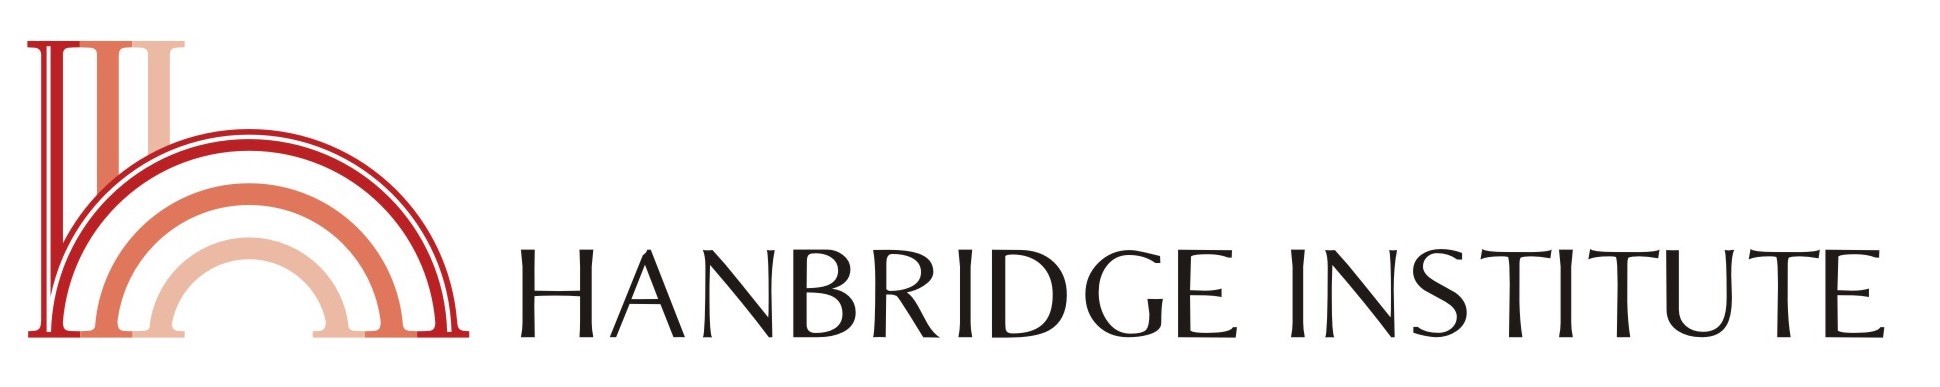 Hanbridge Institute Pte. Ltd. logo